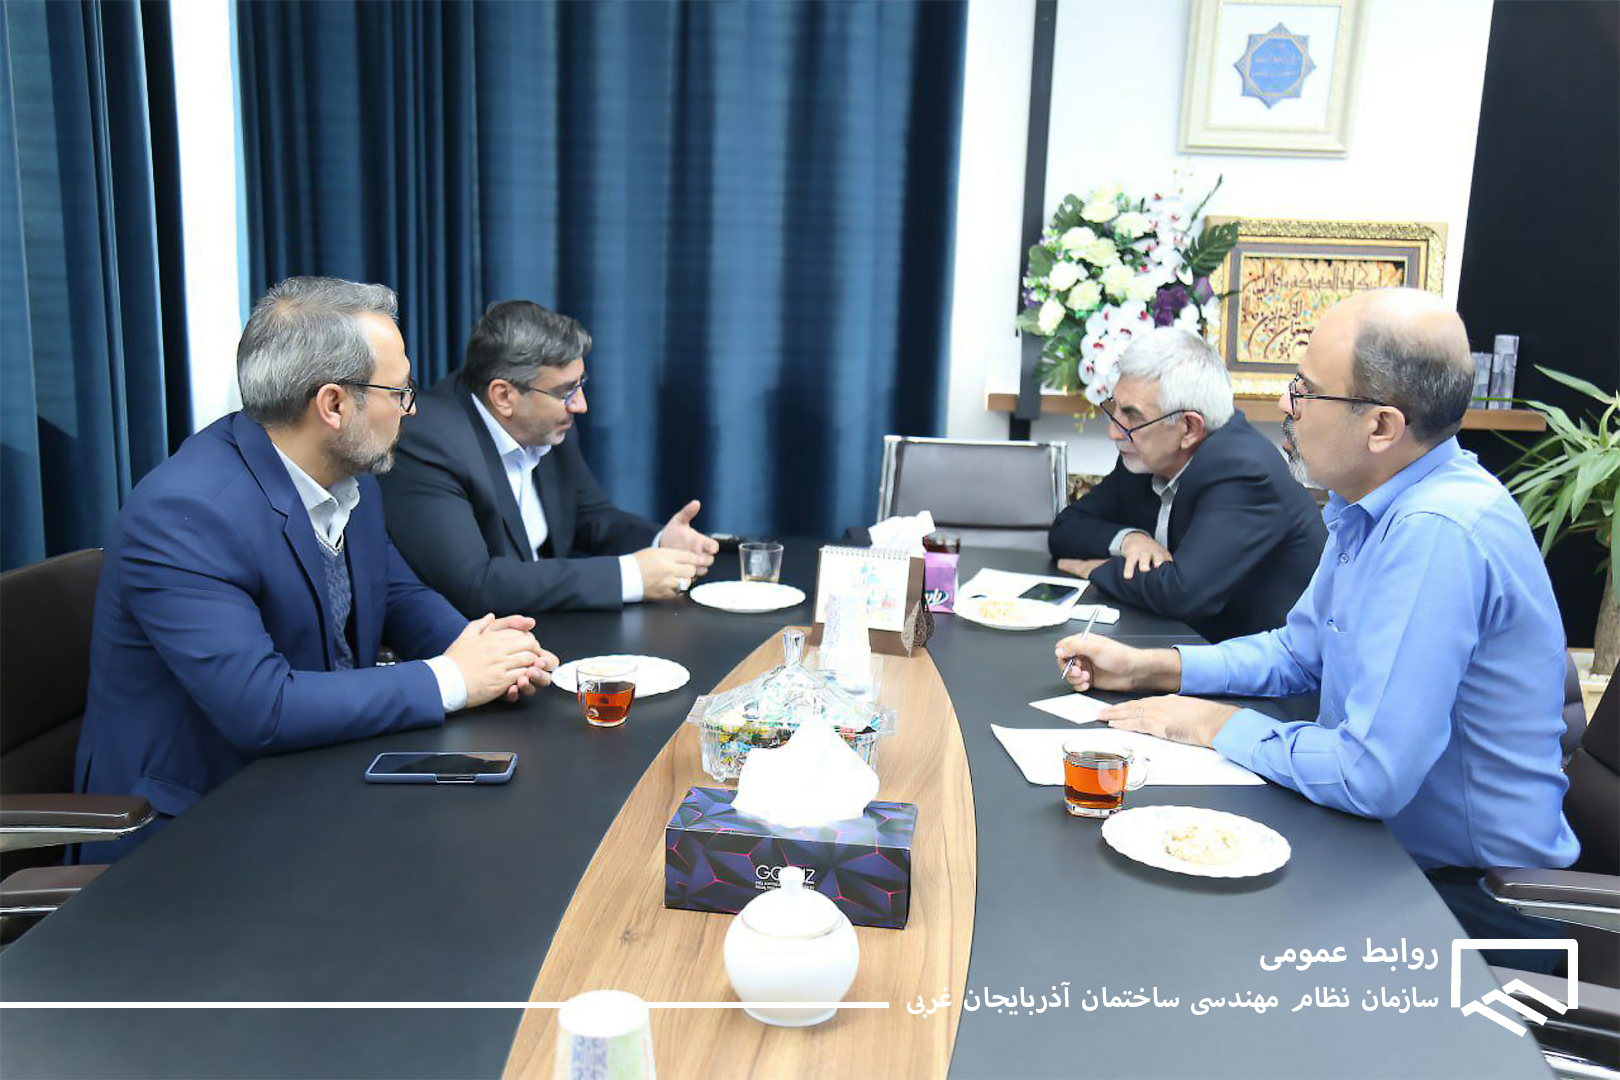  مدیر عامل و معاون شهرک های صنعتی استان با رئیس سازمان نظام مهندسی دیدار کردند.